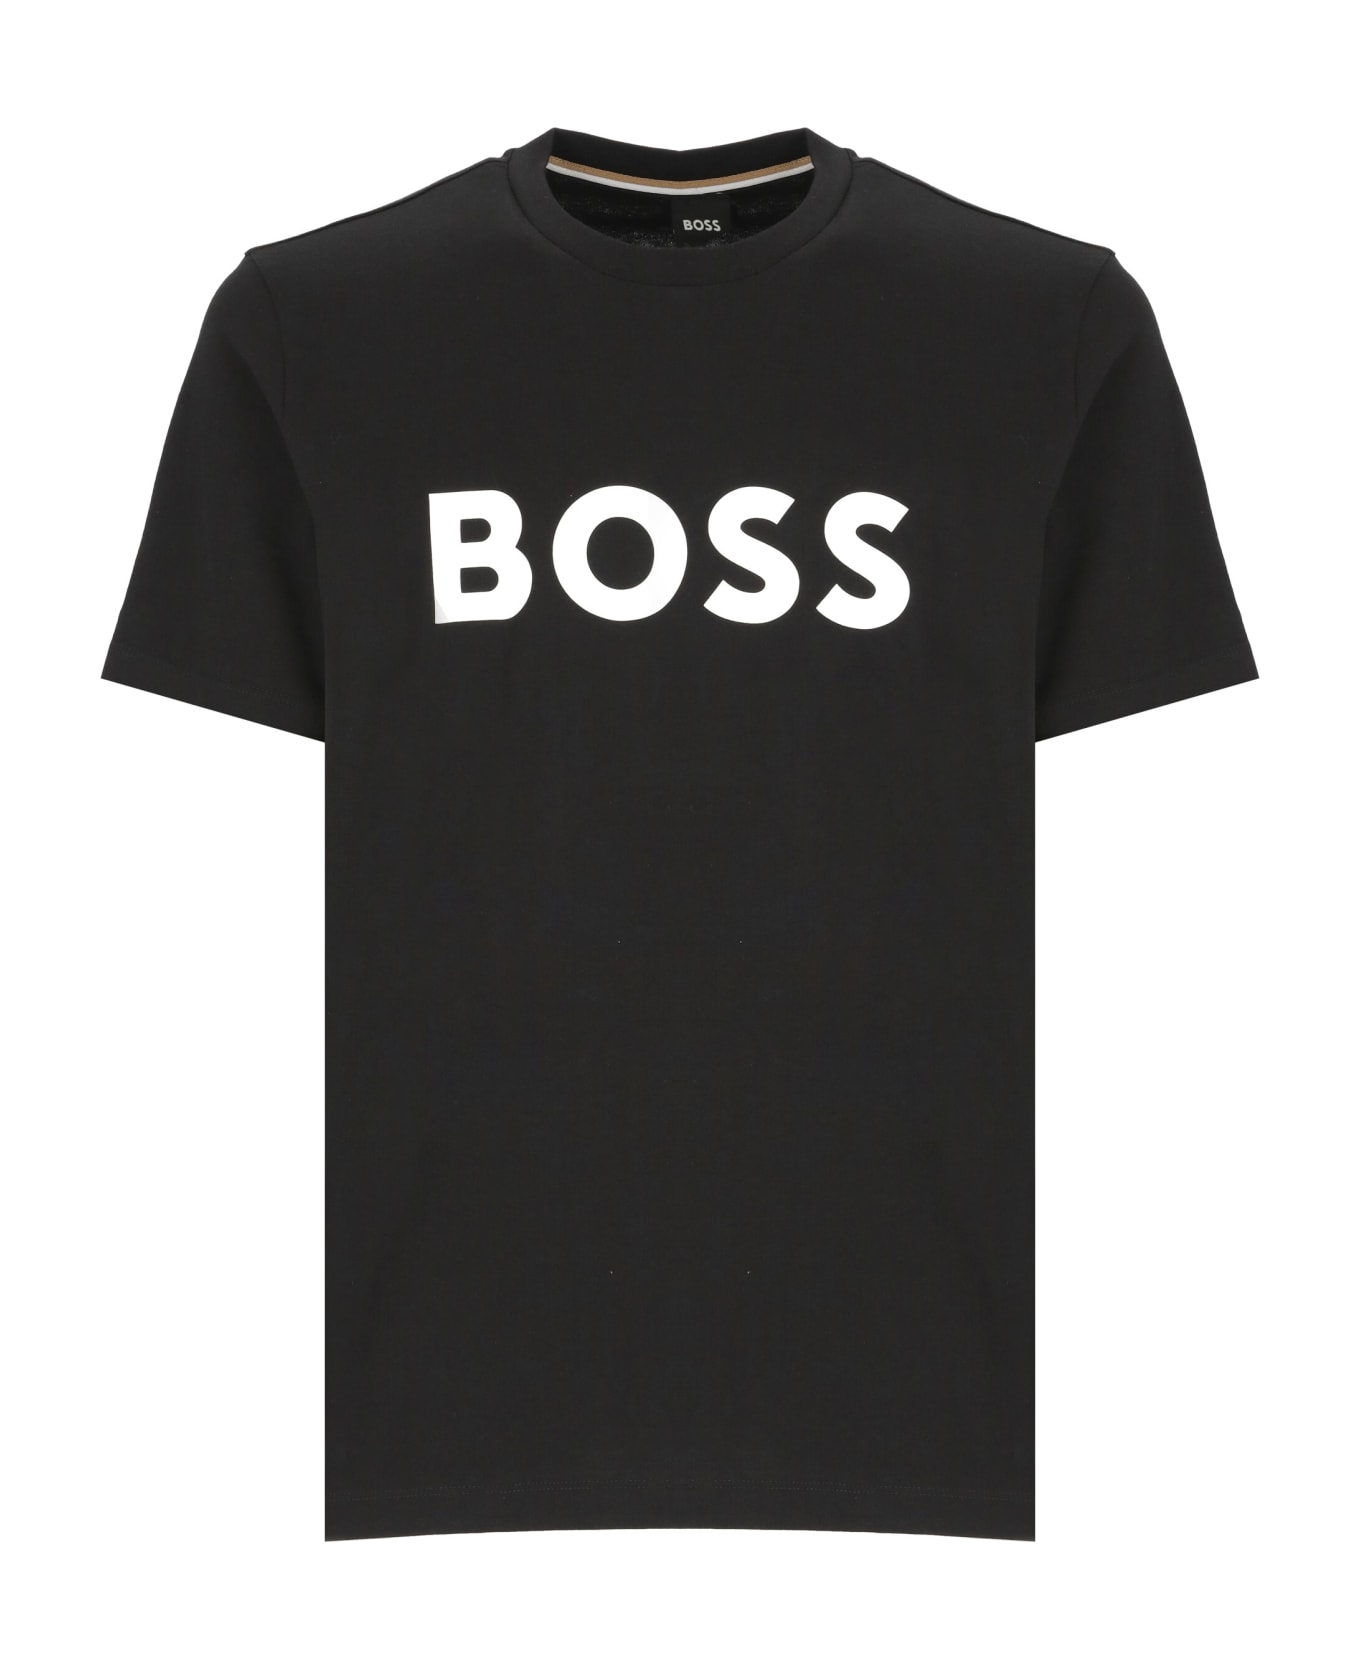 Hugo Boss Tiburt 354 T-shirt - Black シャツ